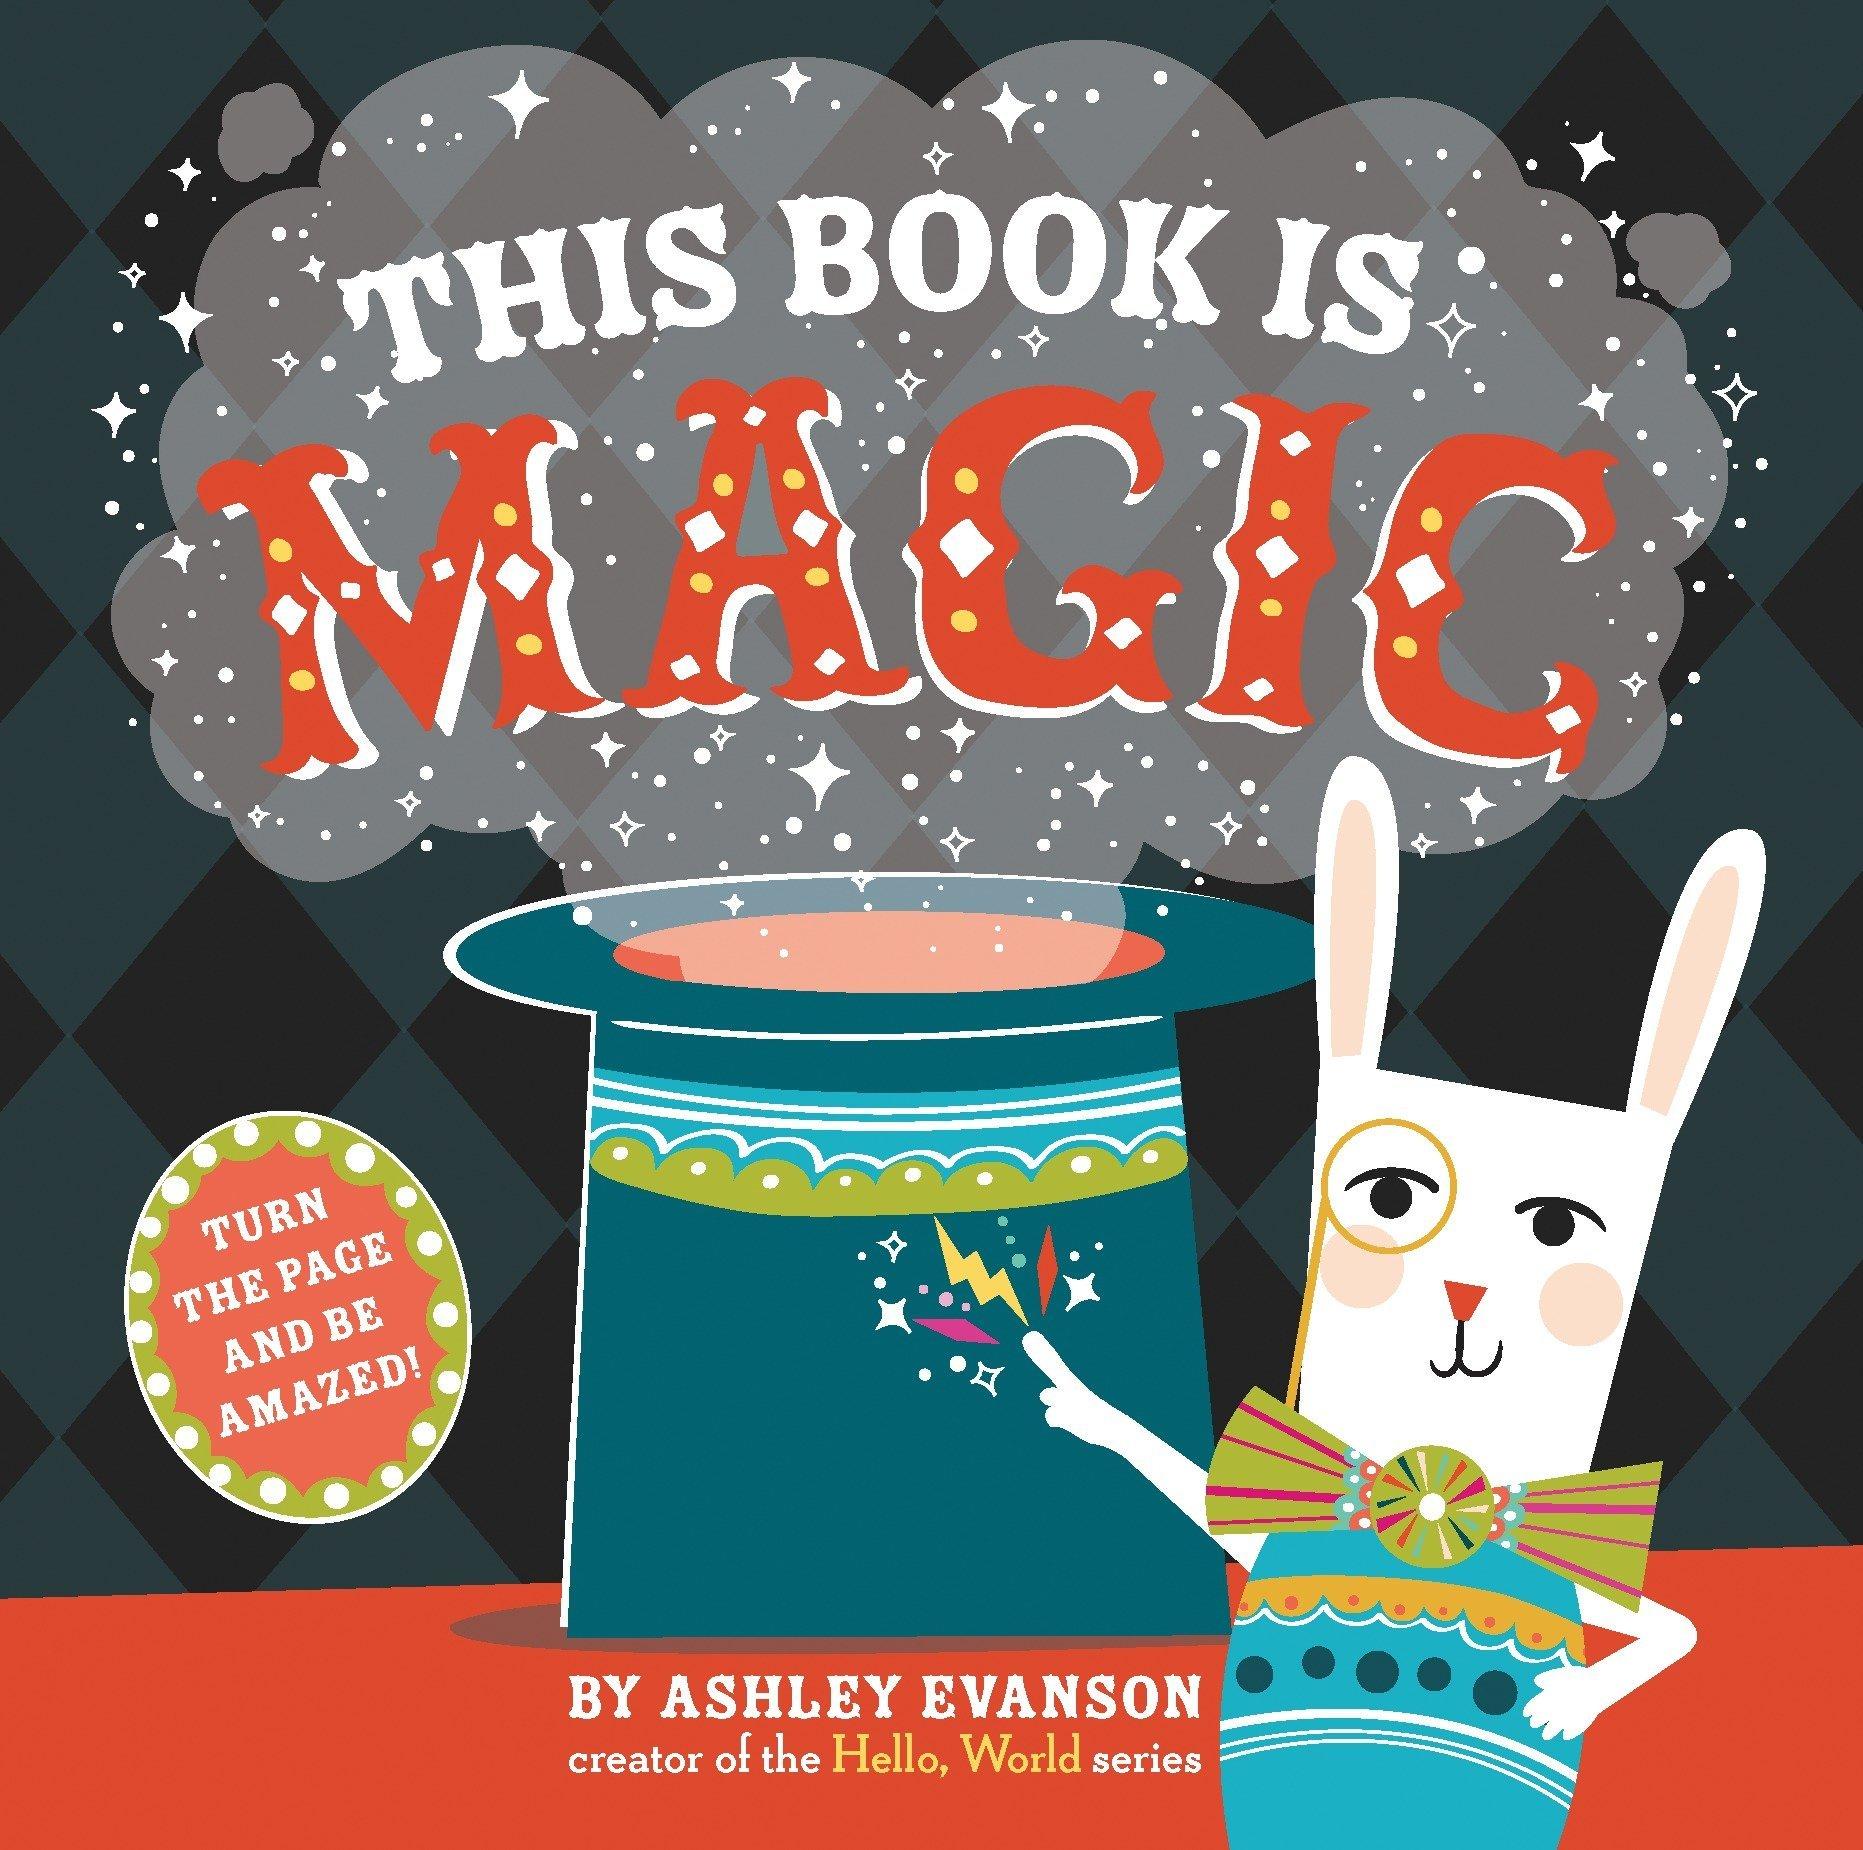 Webthis_book_is_magic